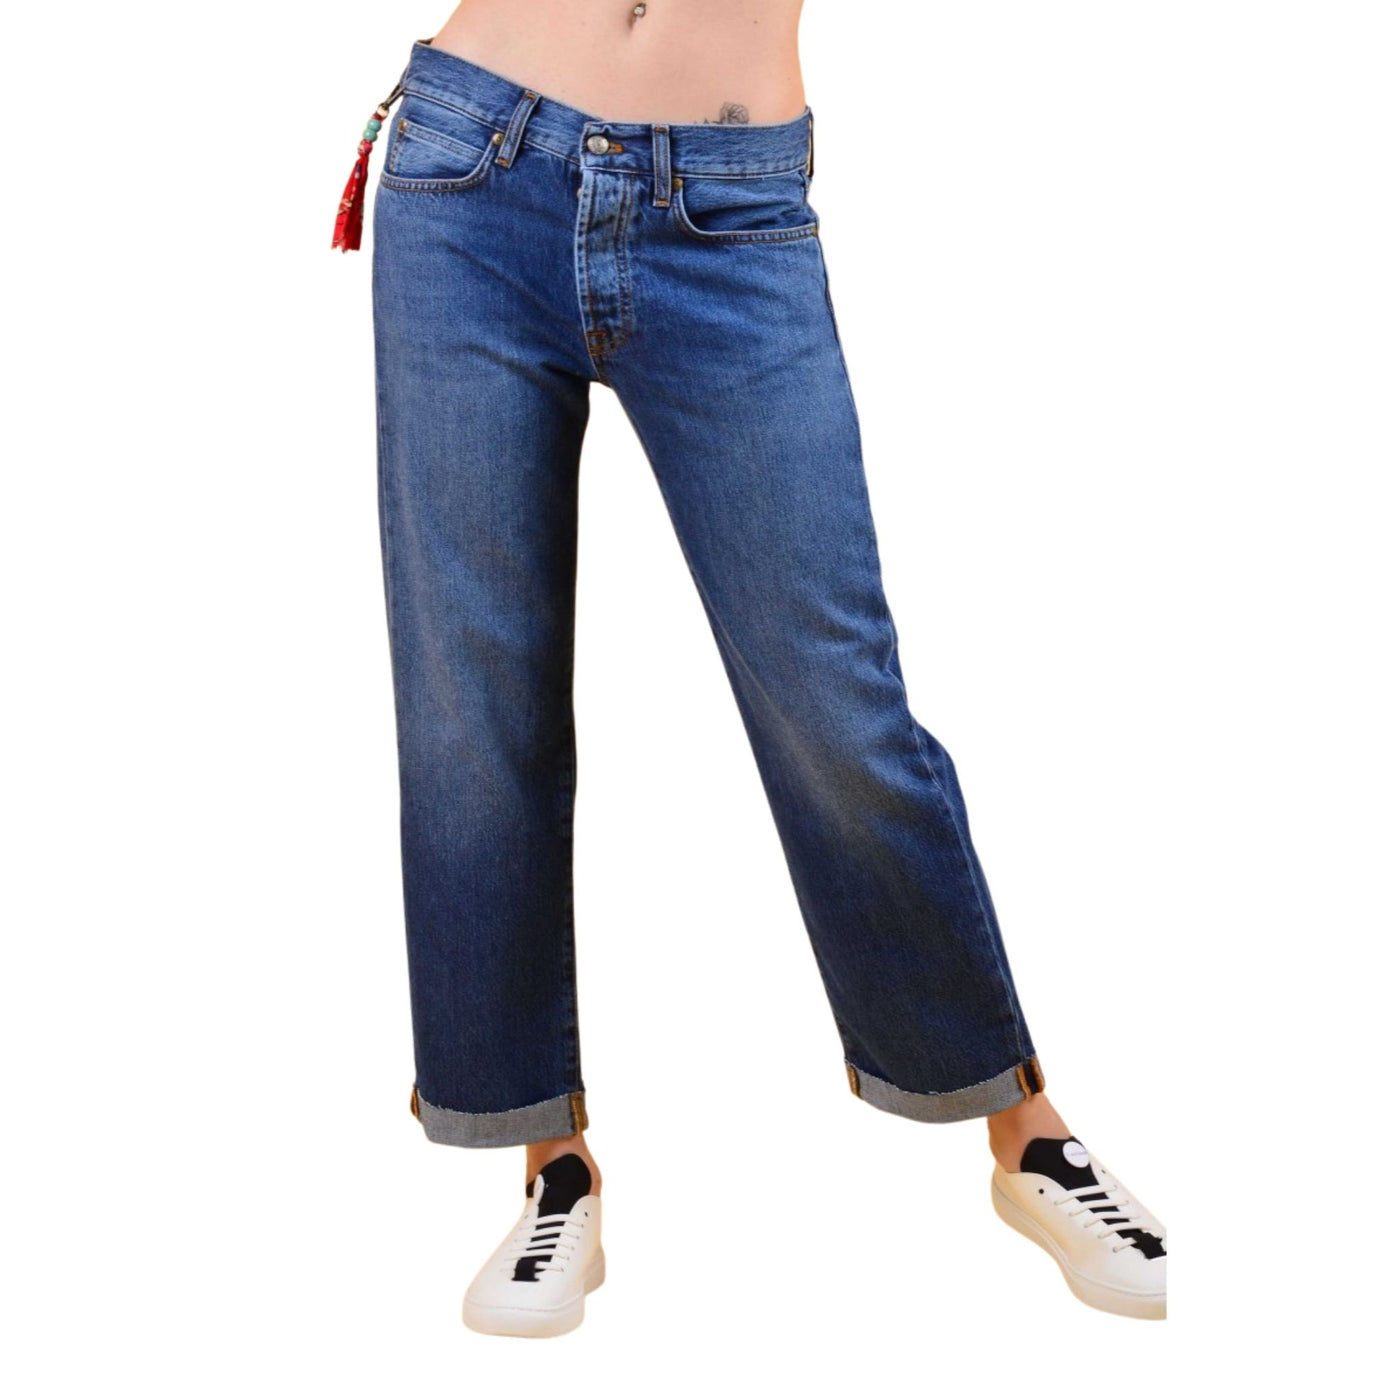 Jeans da donna firmati Roy Roger's su modella vista frontale